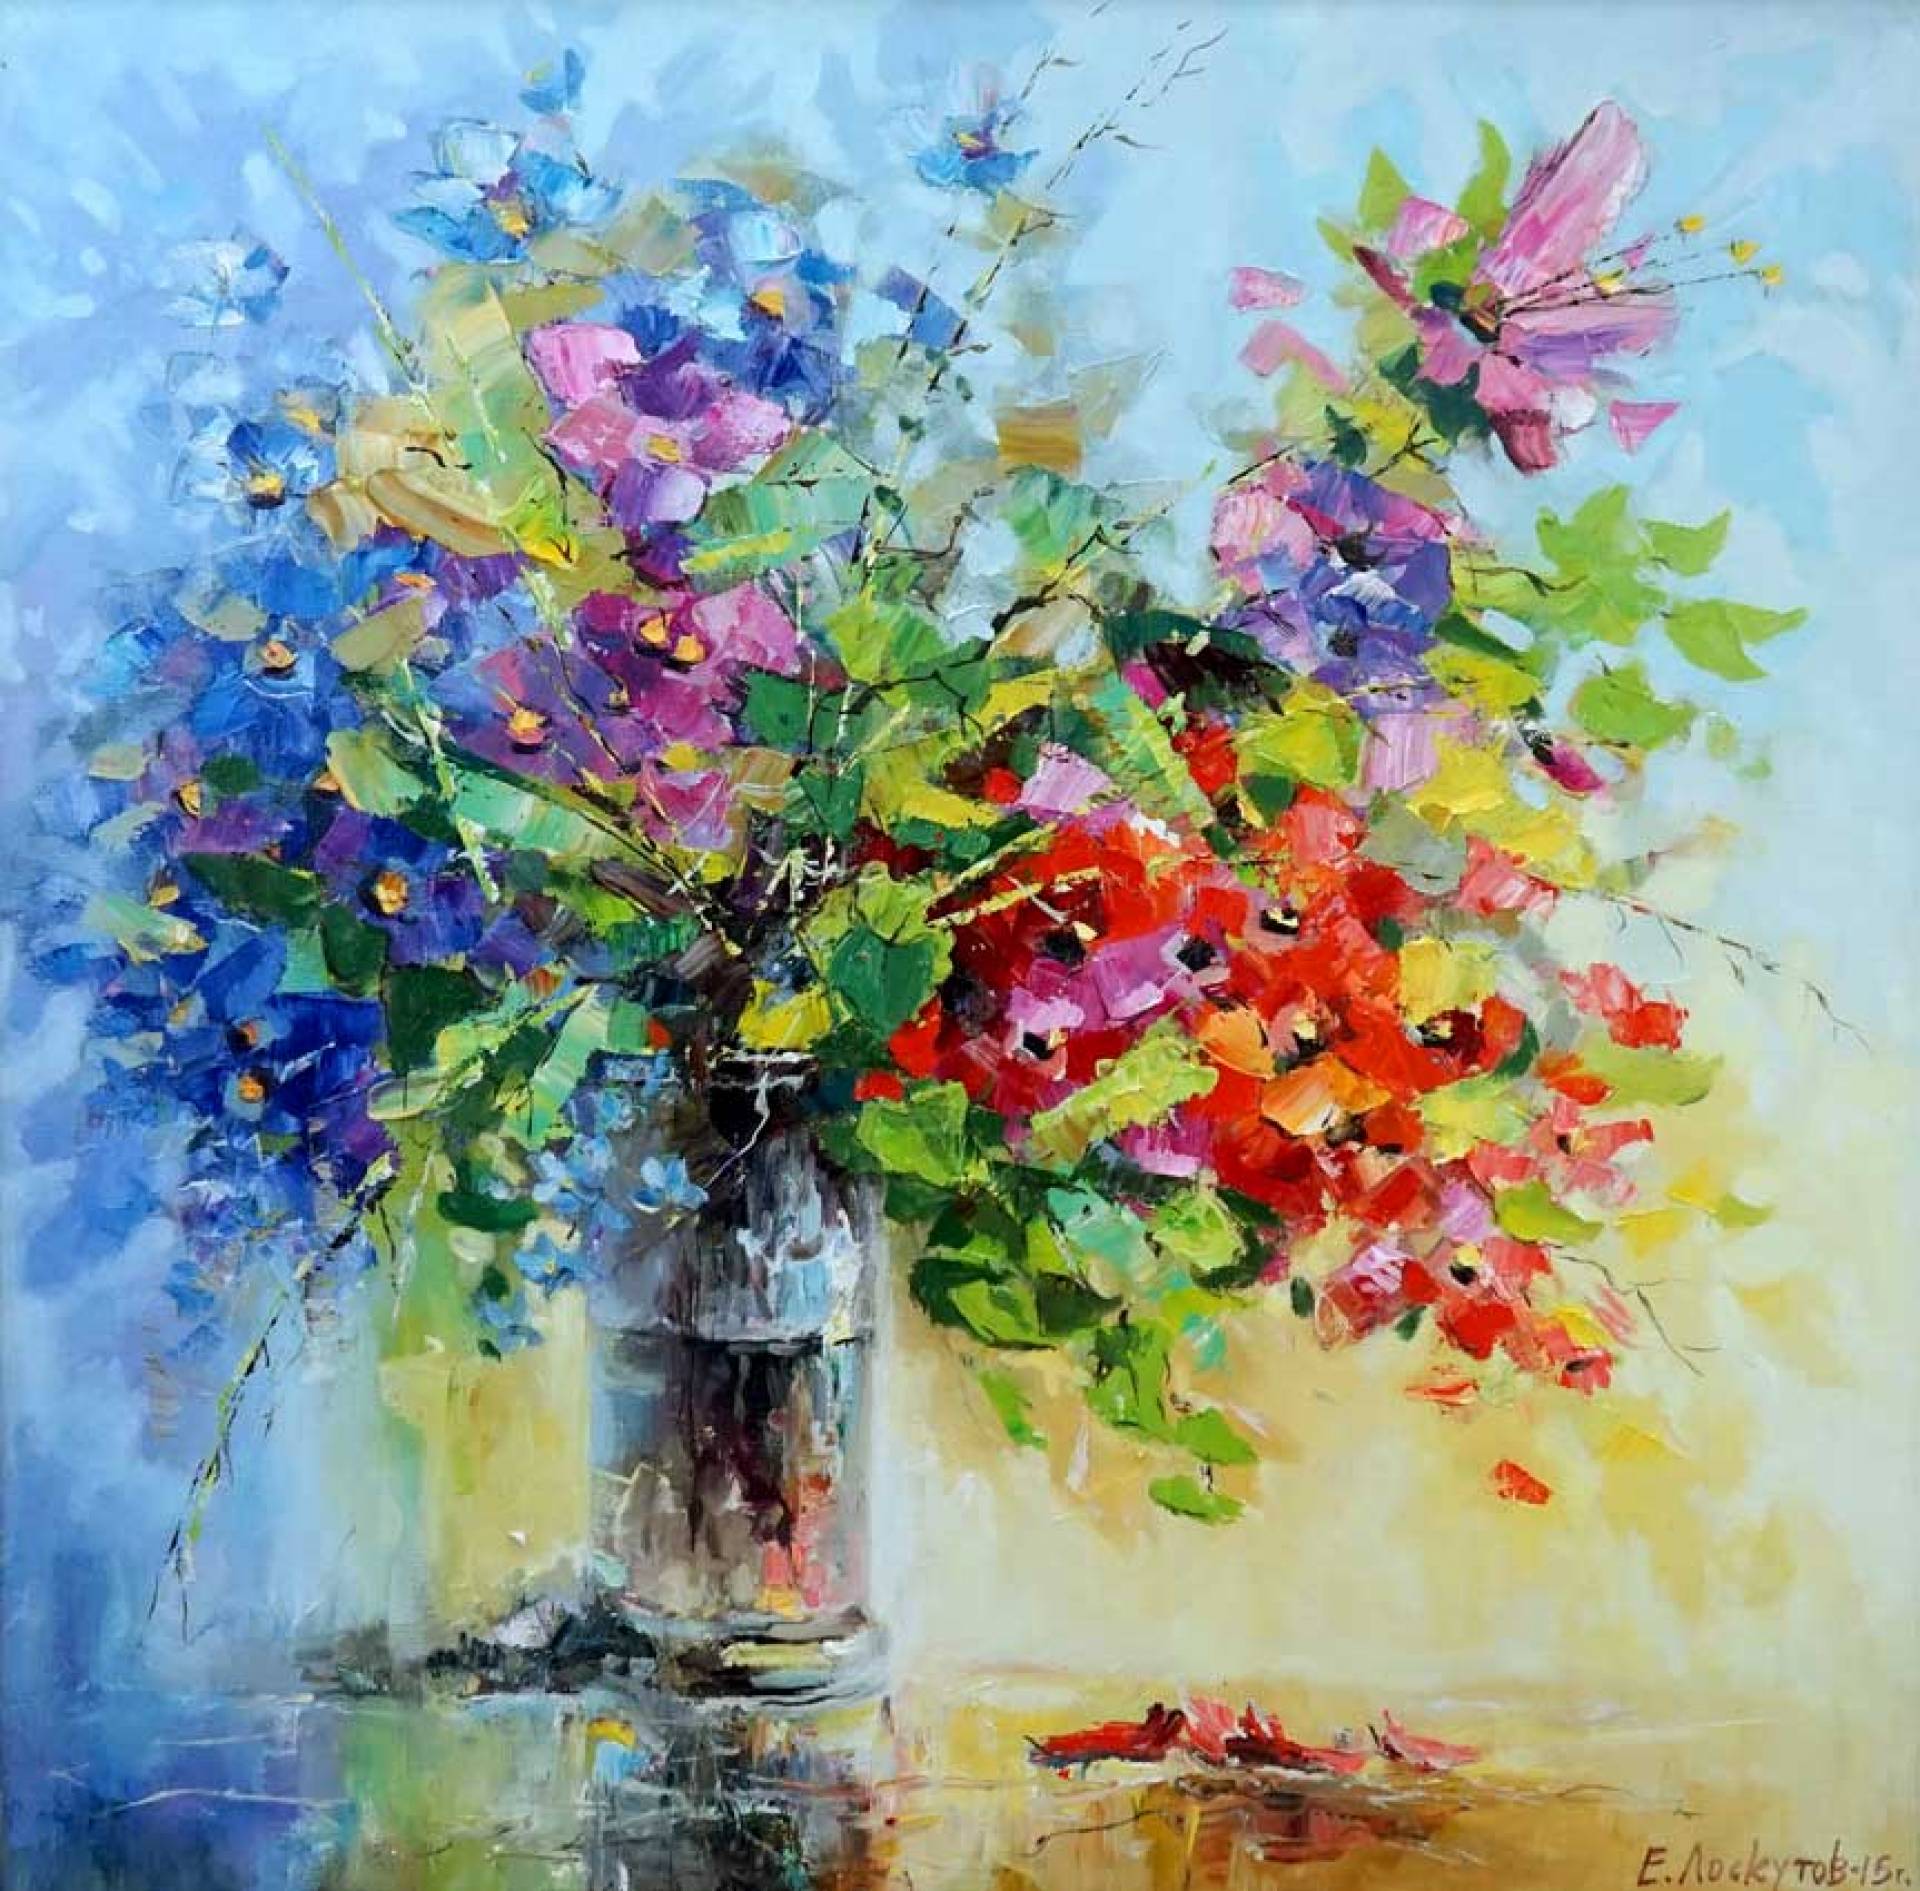 Blooming Serenade, Evgeny Loskutov, Buy the painting Oil